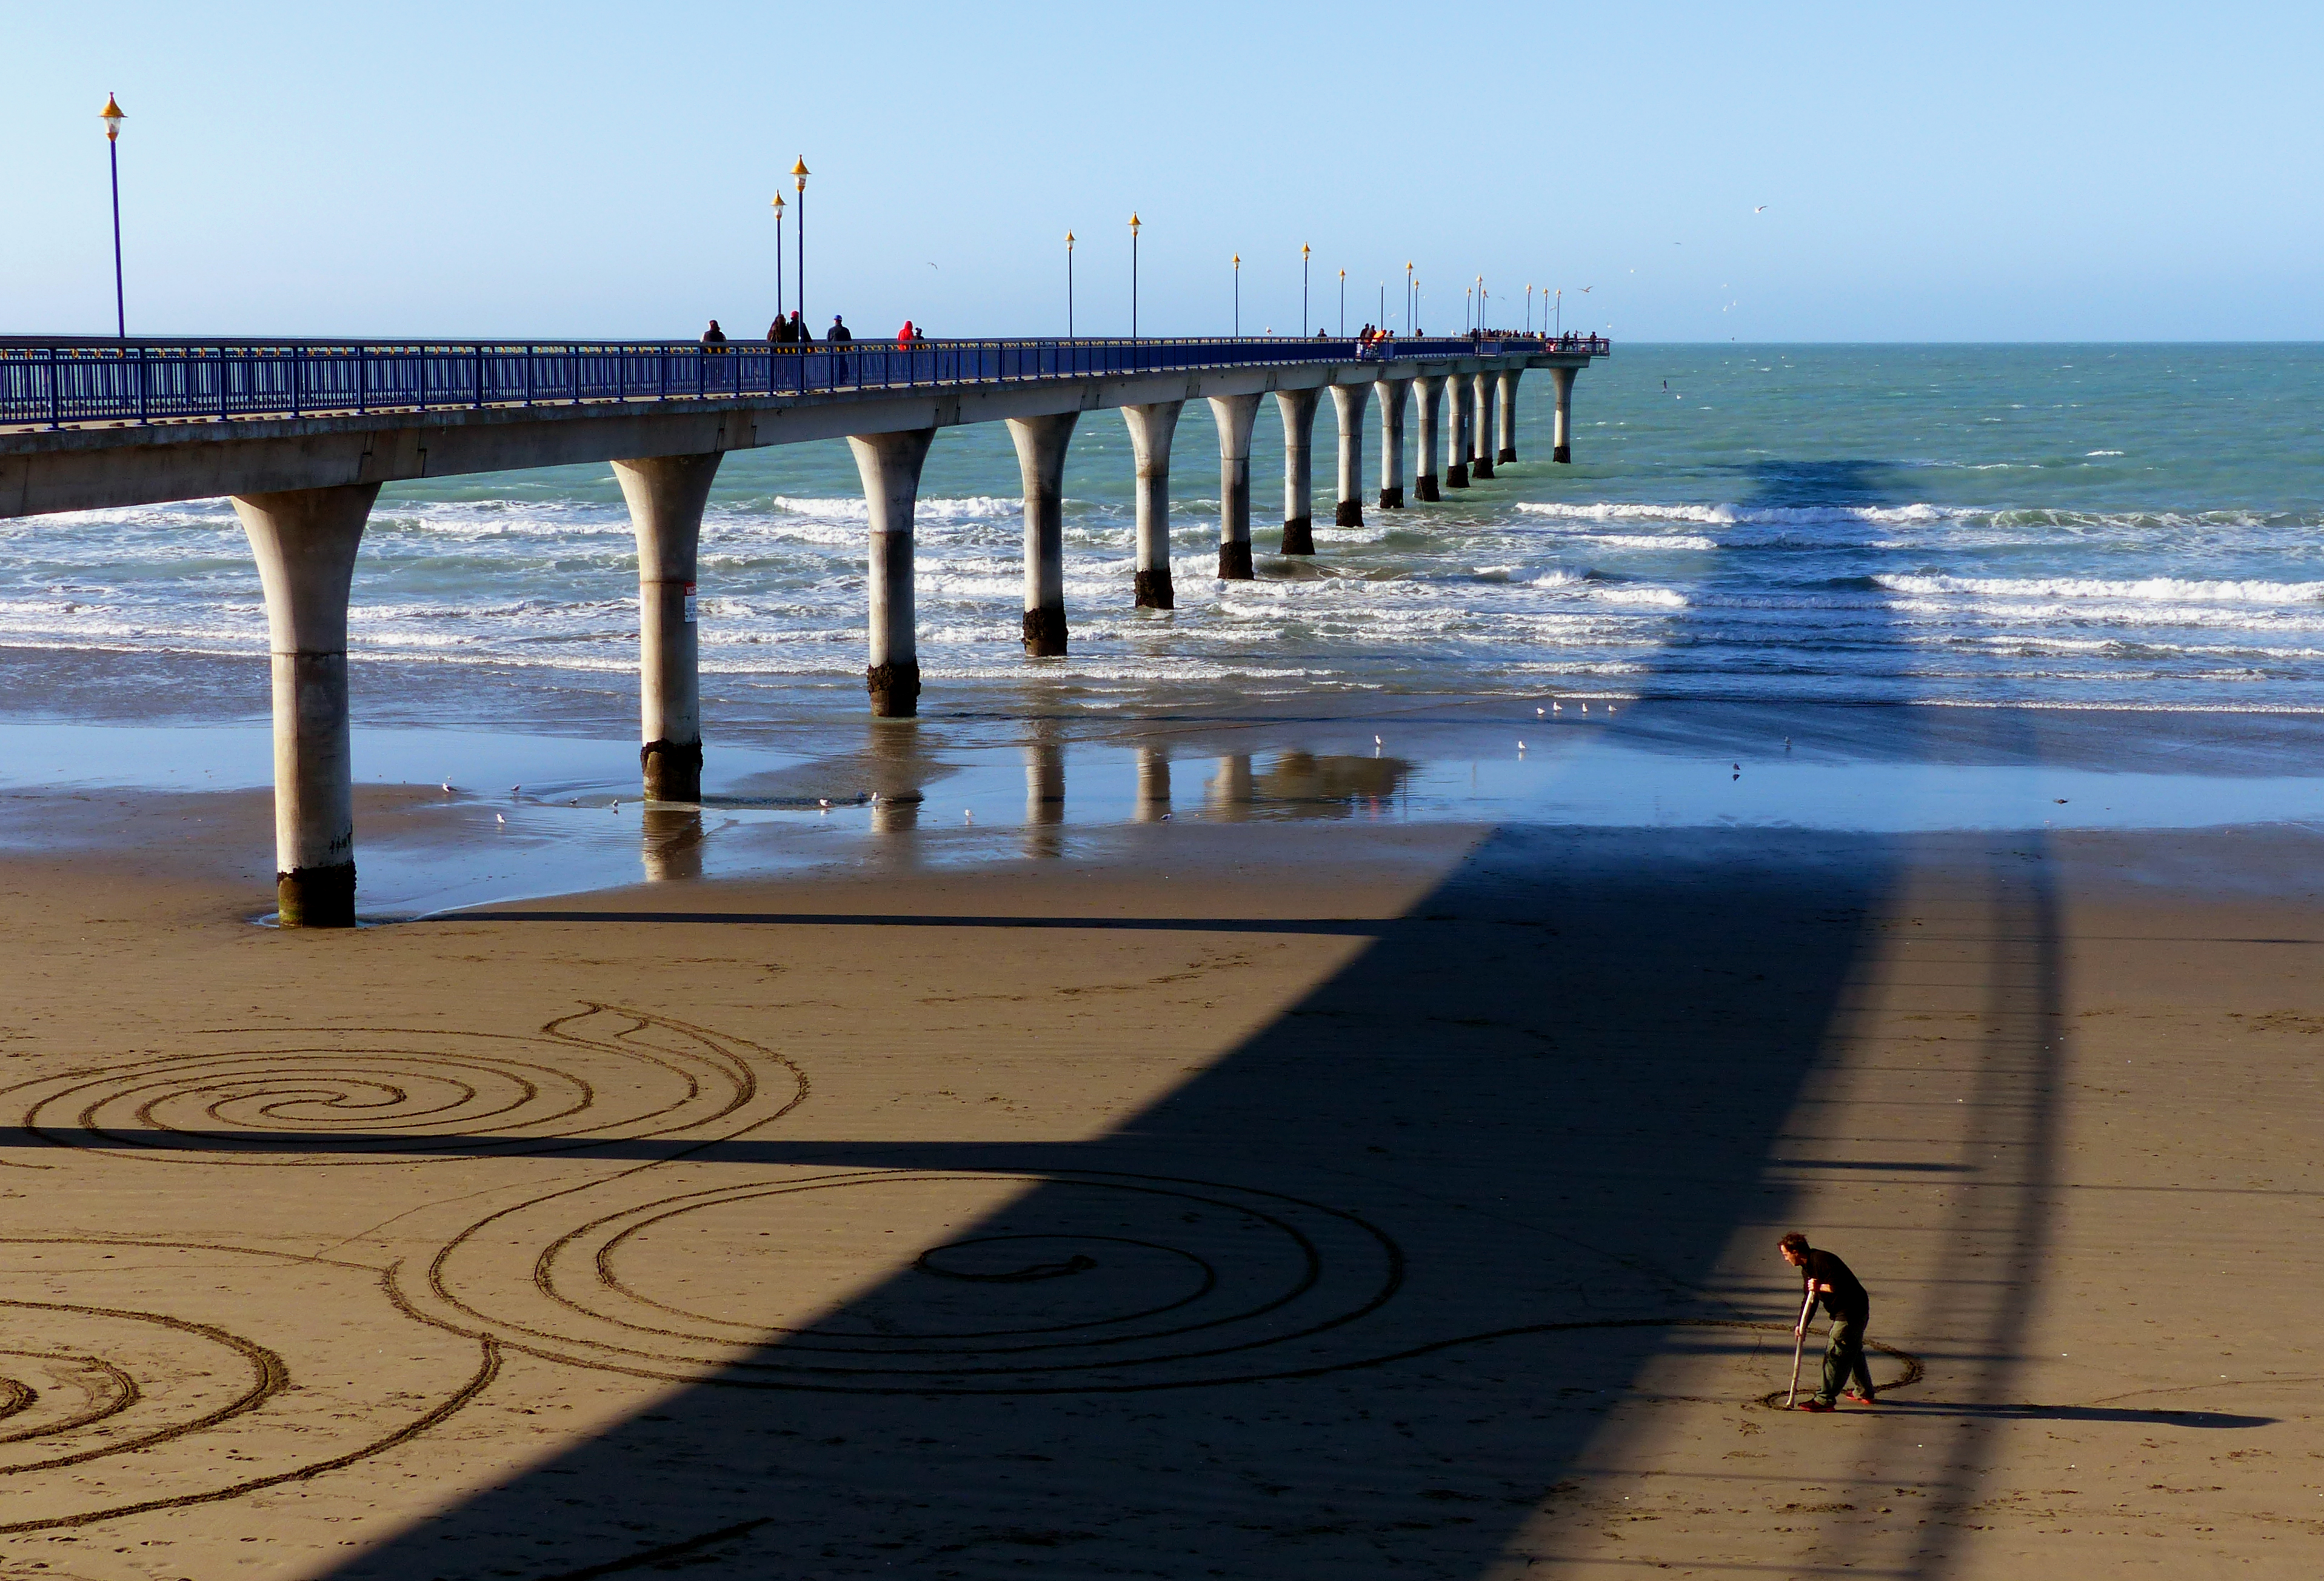 Sand artist. new brighton pier. photo